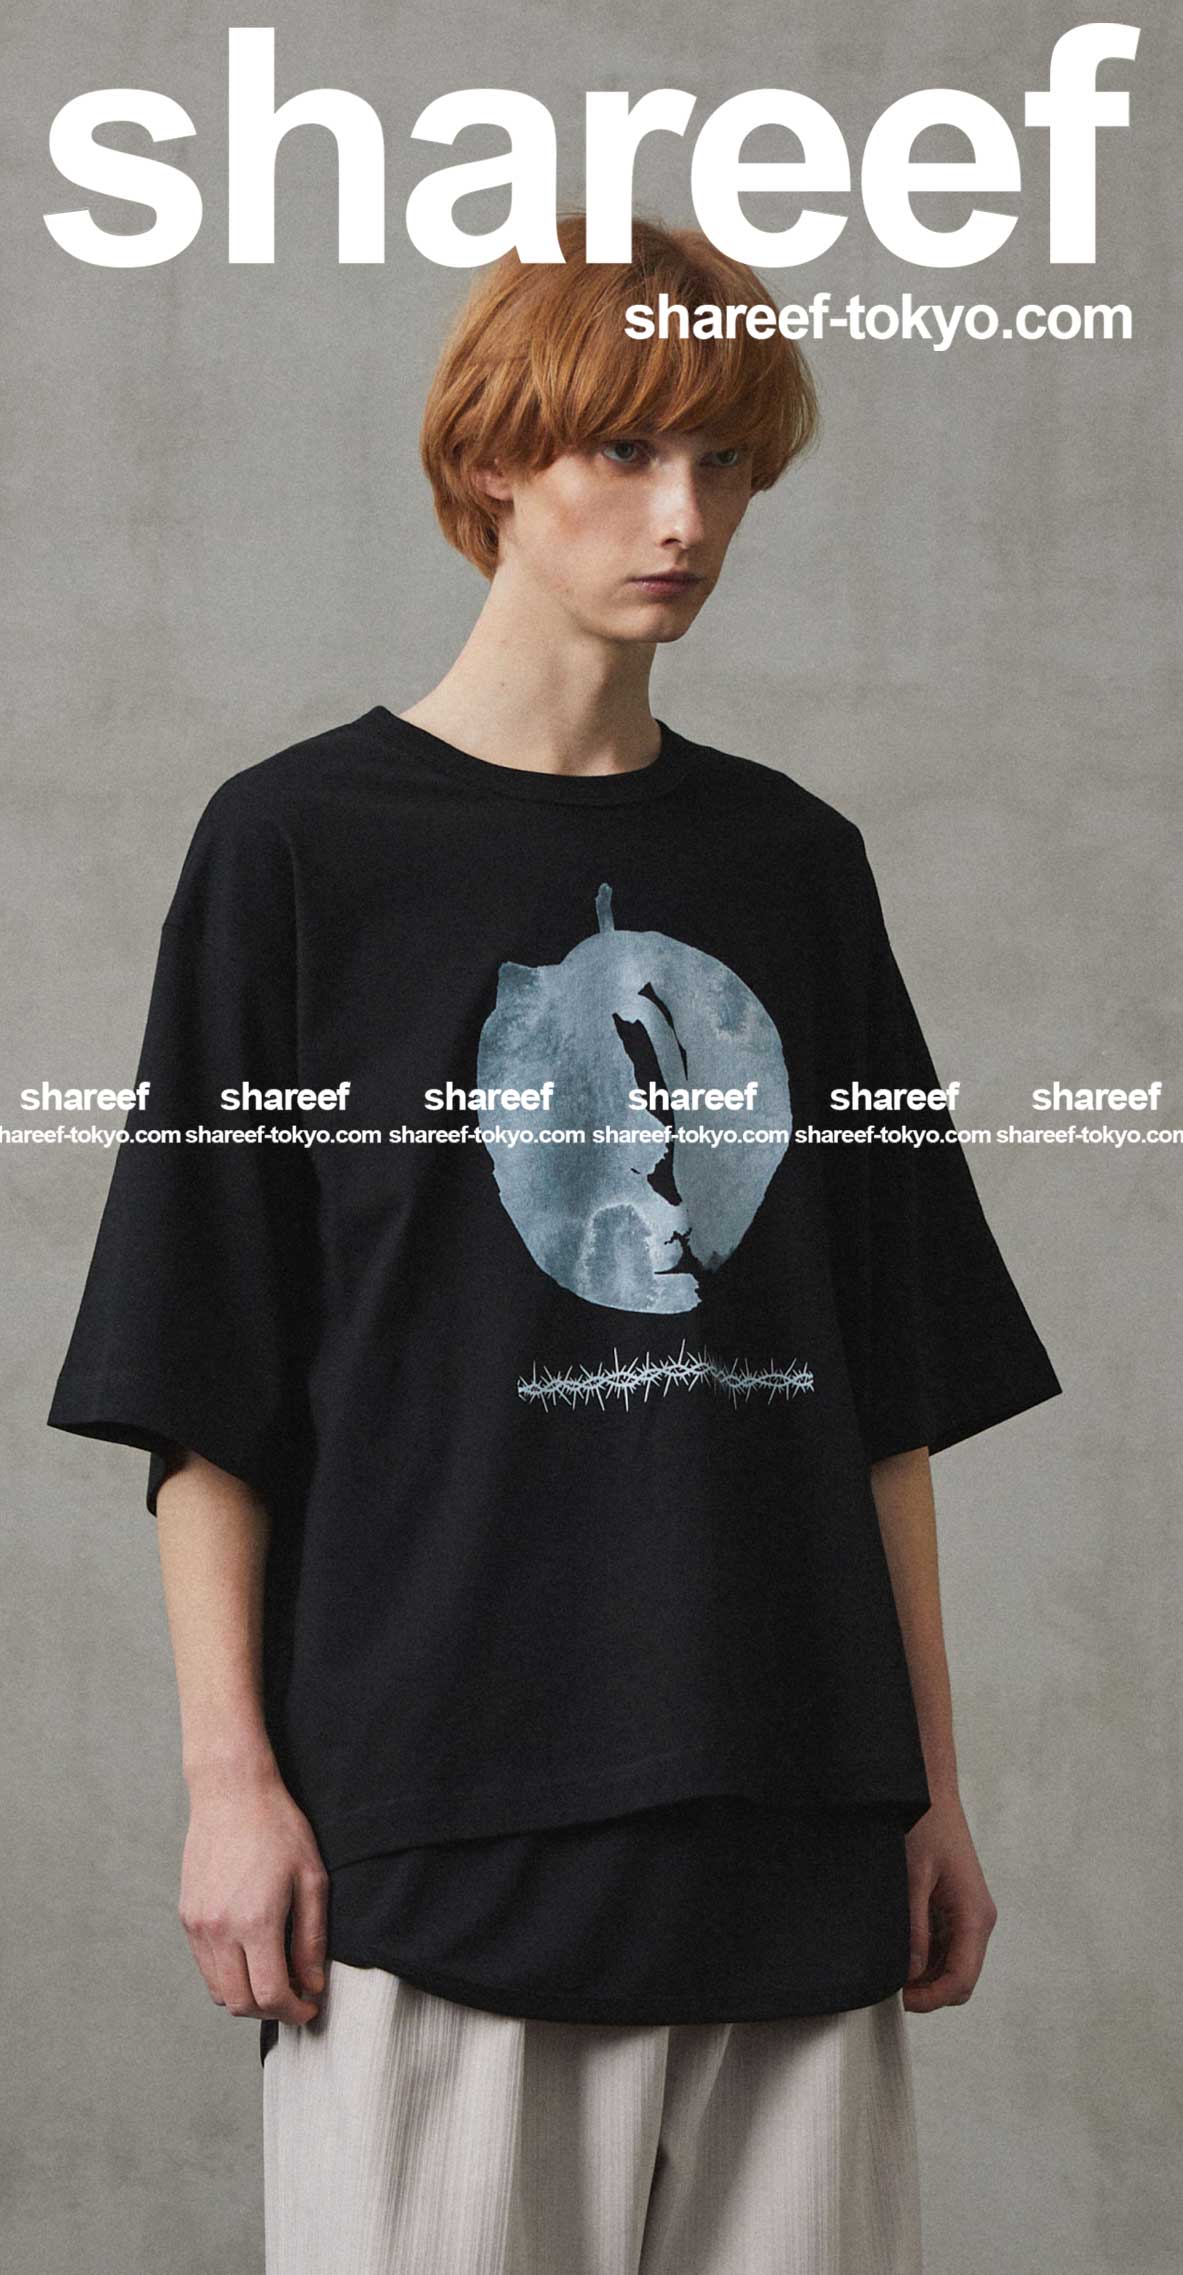 SHAREEF ONLINE SHOP / TOPページ